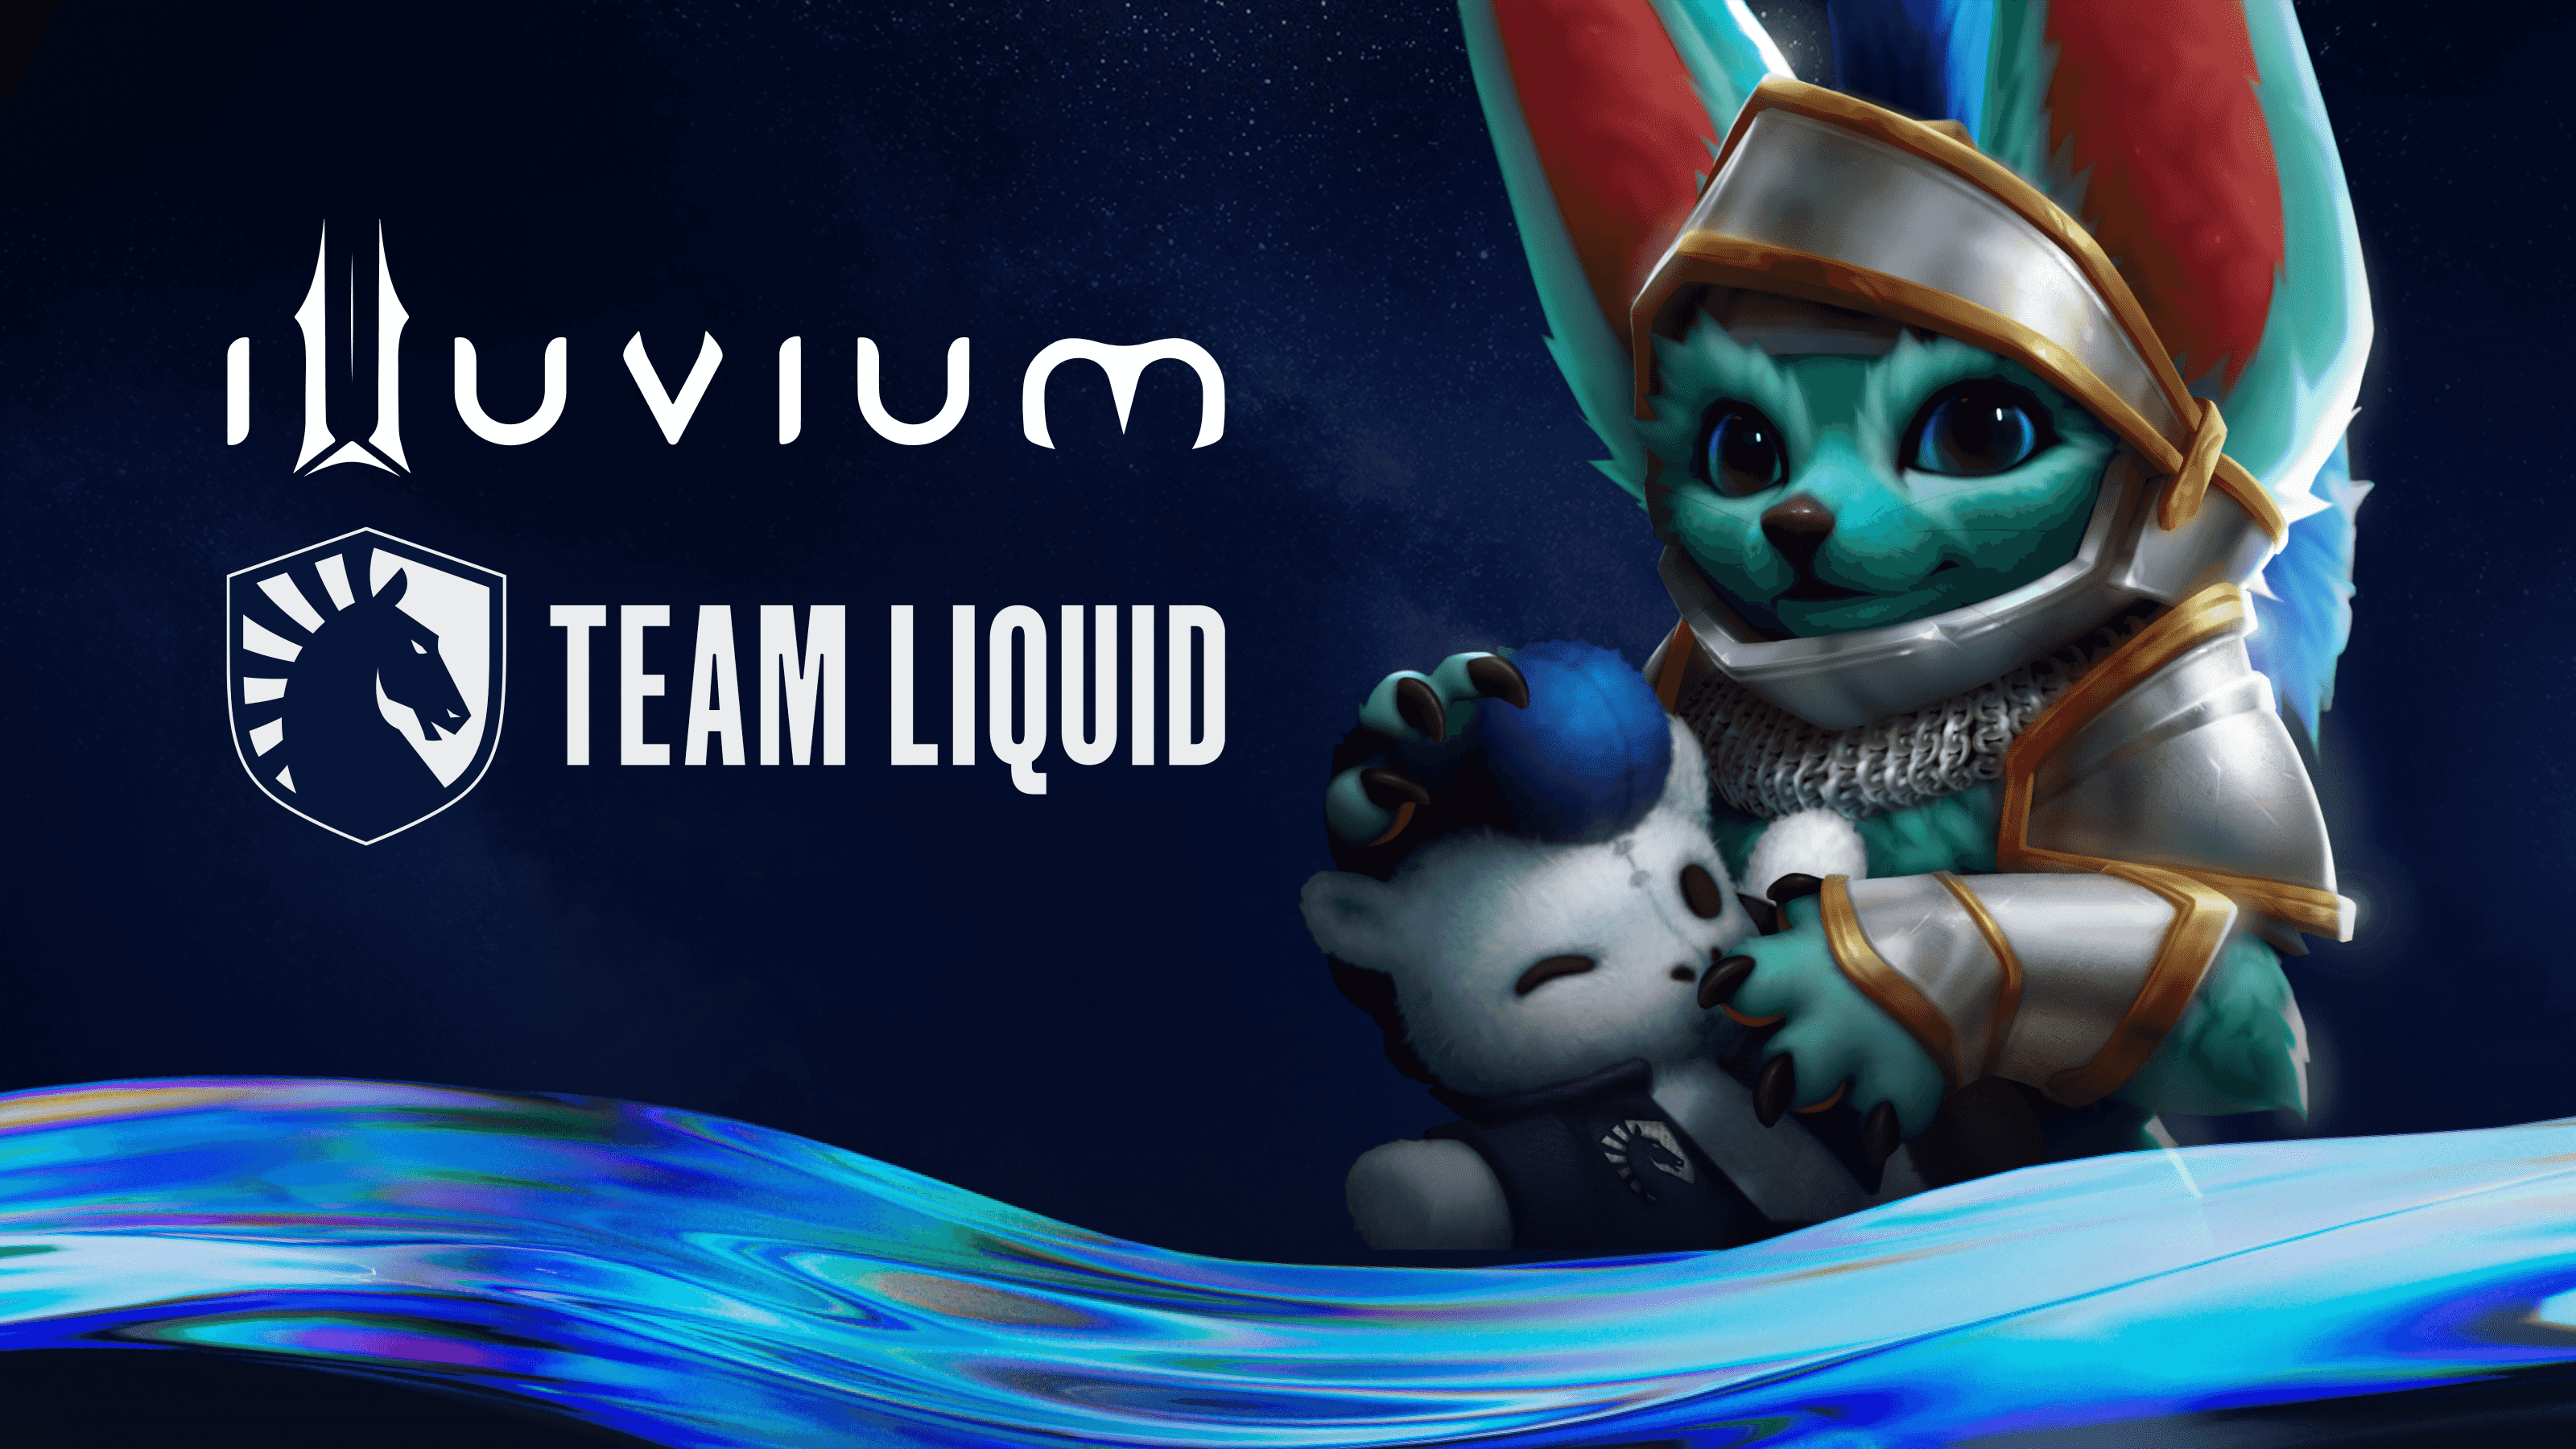 Team Liquid e Illuvium estão planejando um torneio de e-sports NFT